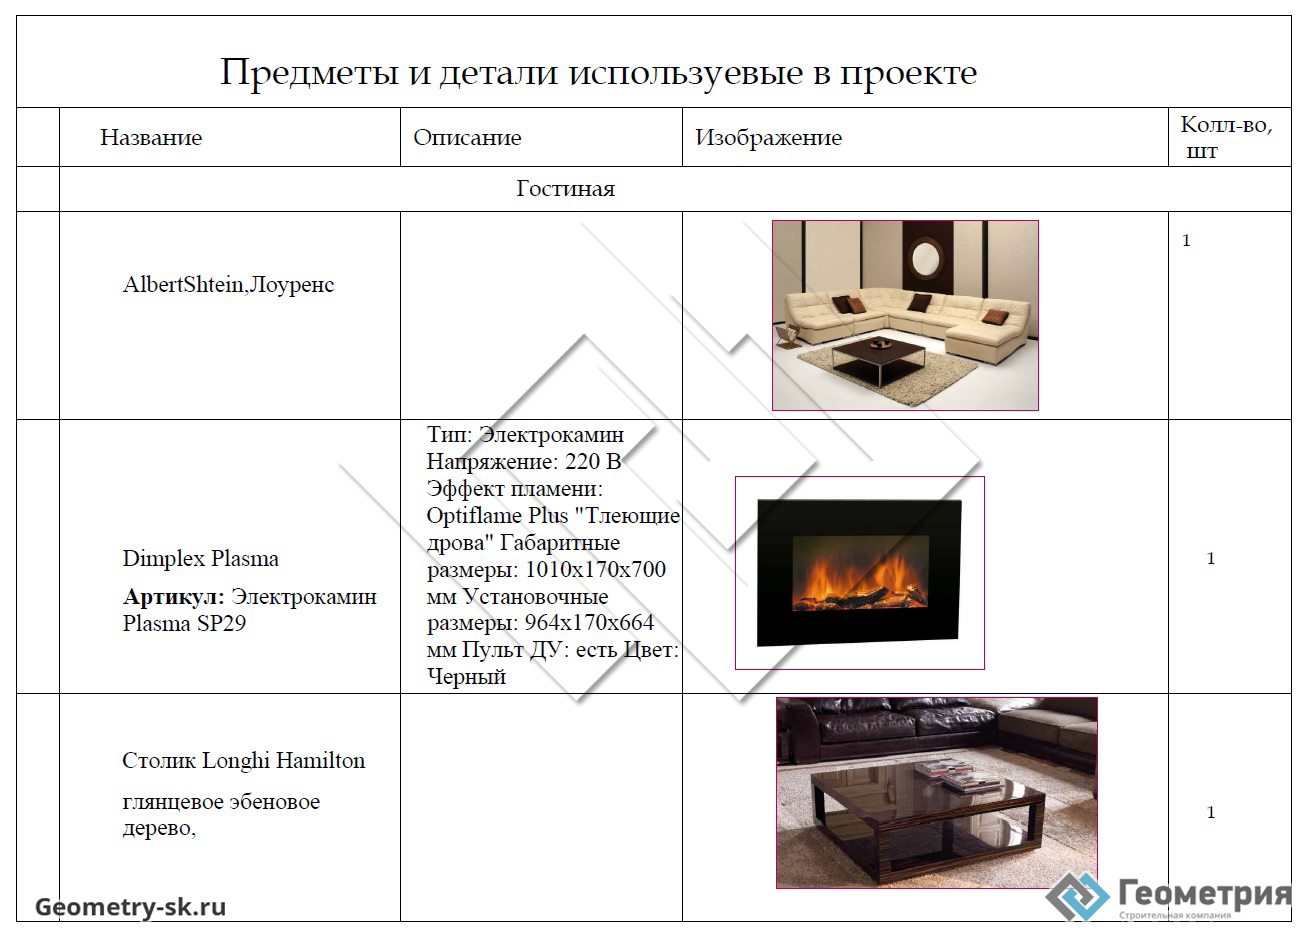 Спецификация мебели в дизайн-проекте